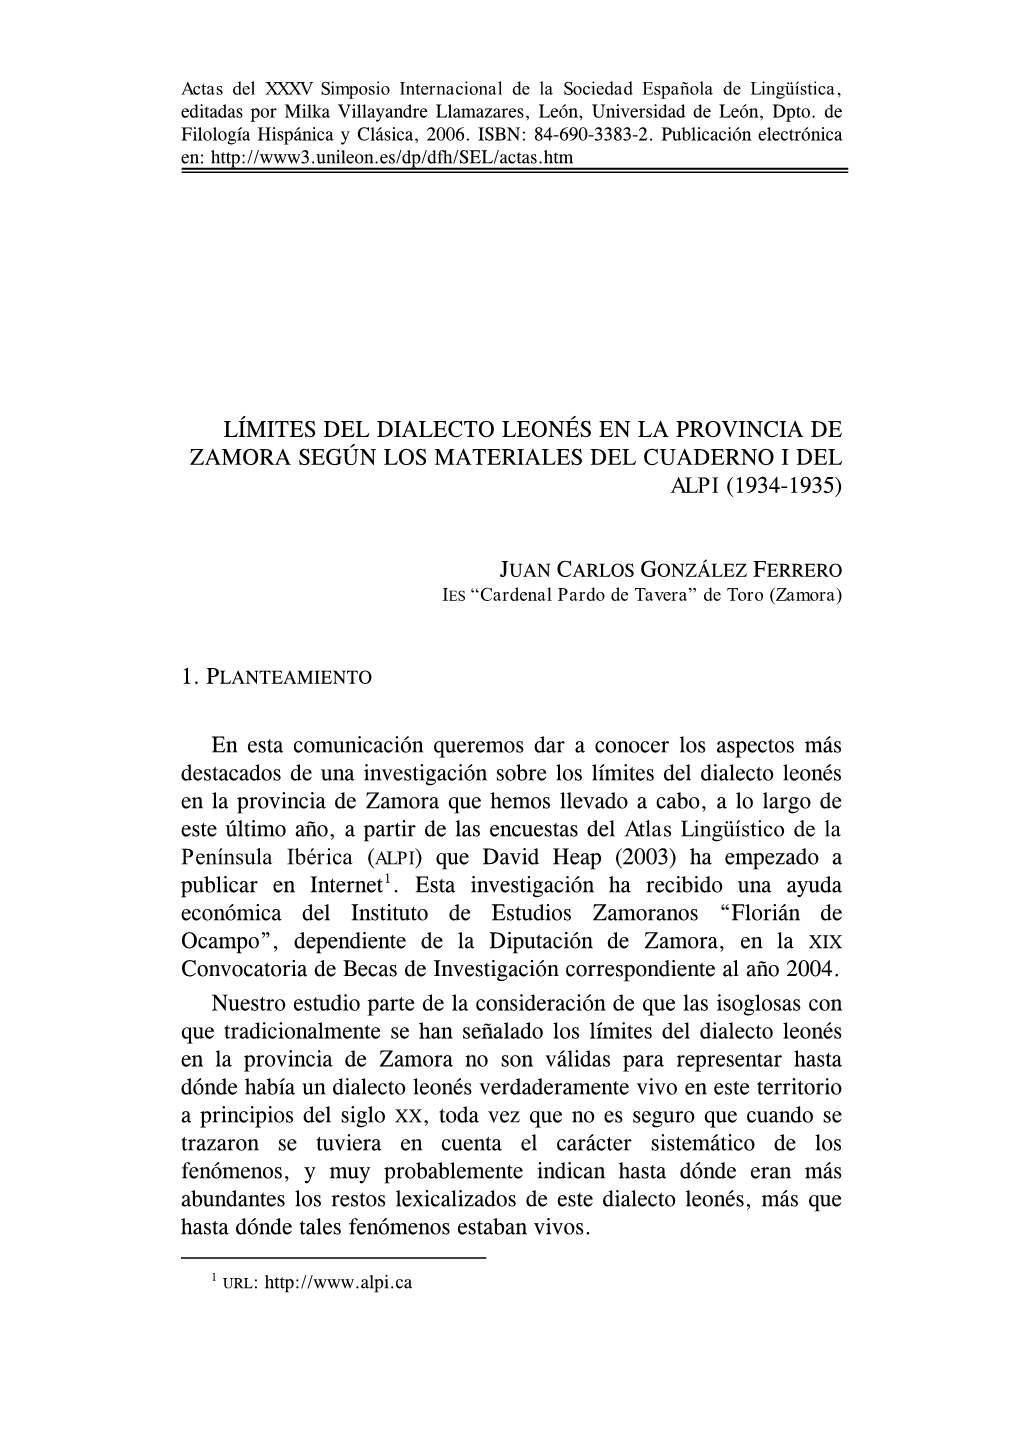 Límites Del Dialecto Leonés En La Provincia De Zamora Según Los Materiales Del Cuaderno I Del Alpi (1934-1935)